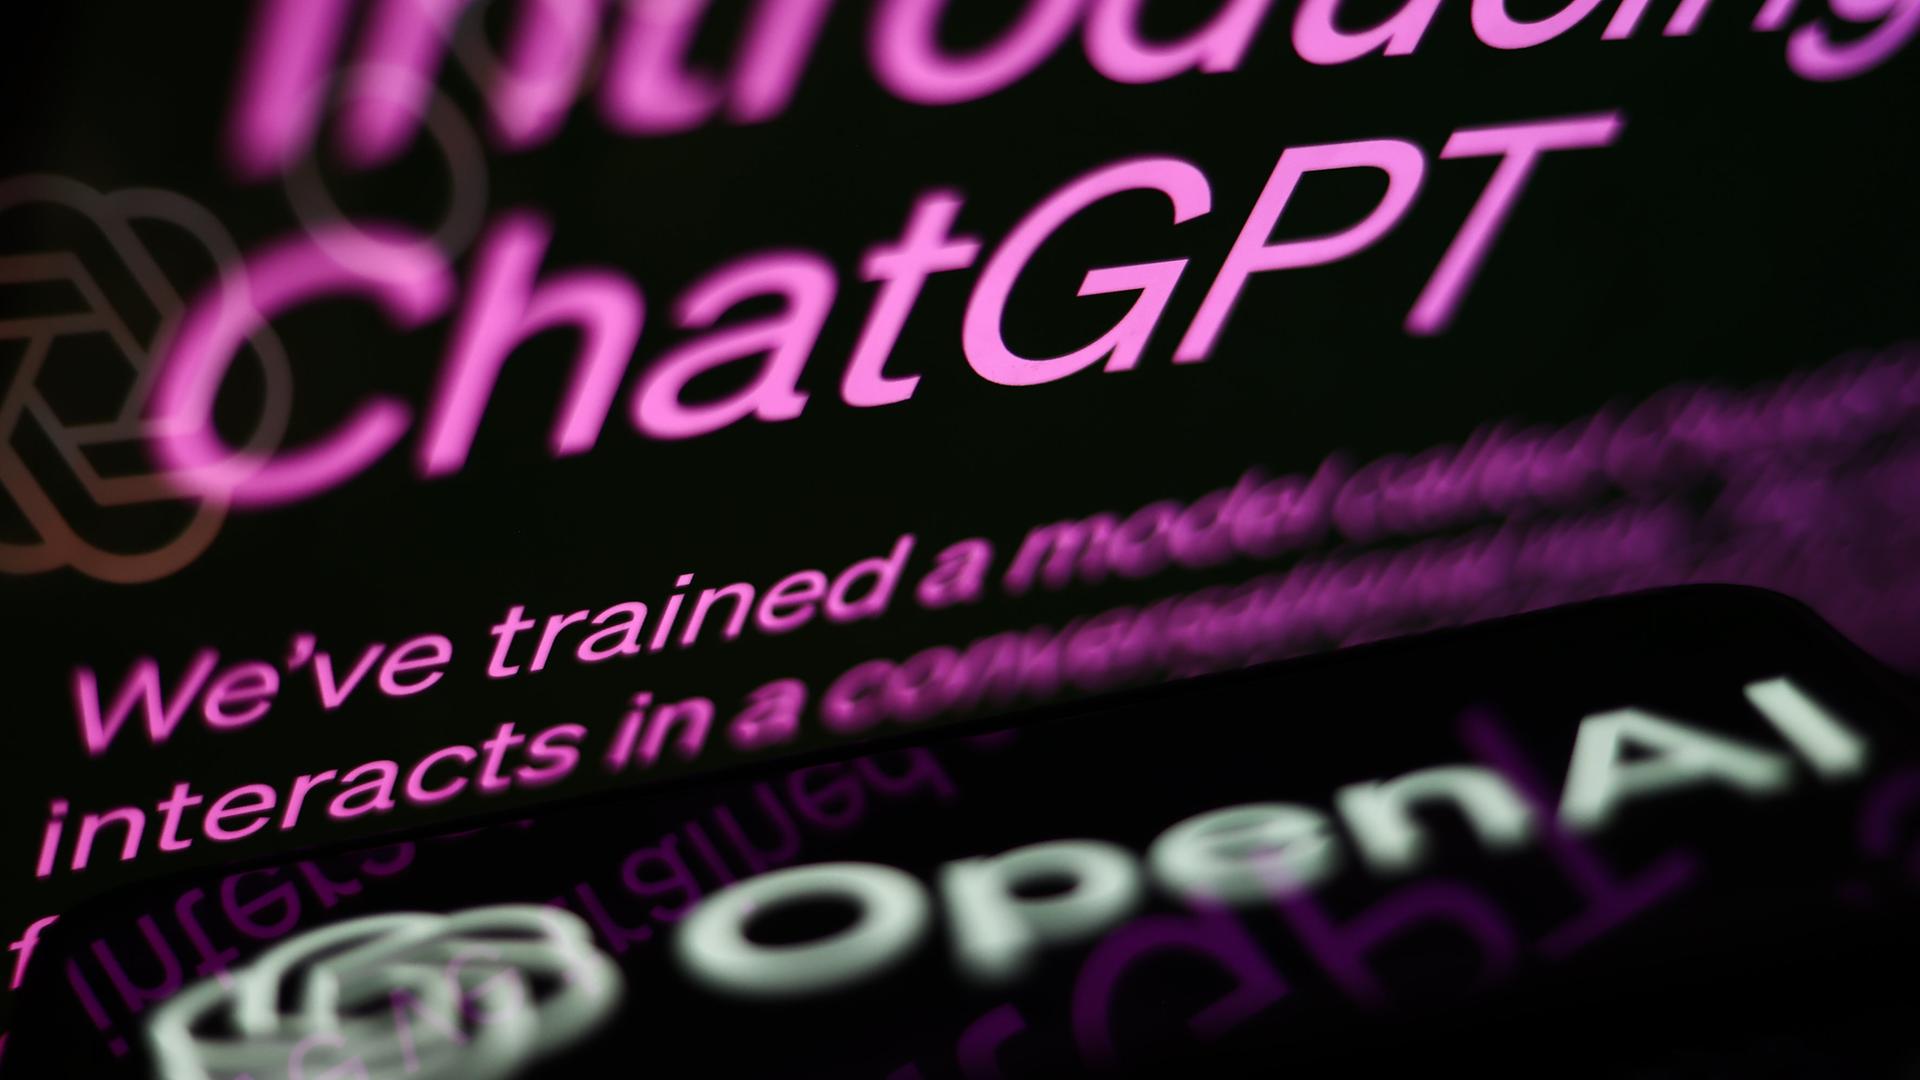 Die ChatGPT-Website ist auf dem Bildschirm eines Laptops und das OpenAI-Logo auf dem Bildschirm eines Telefons zusehen.